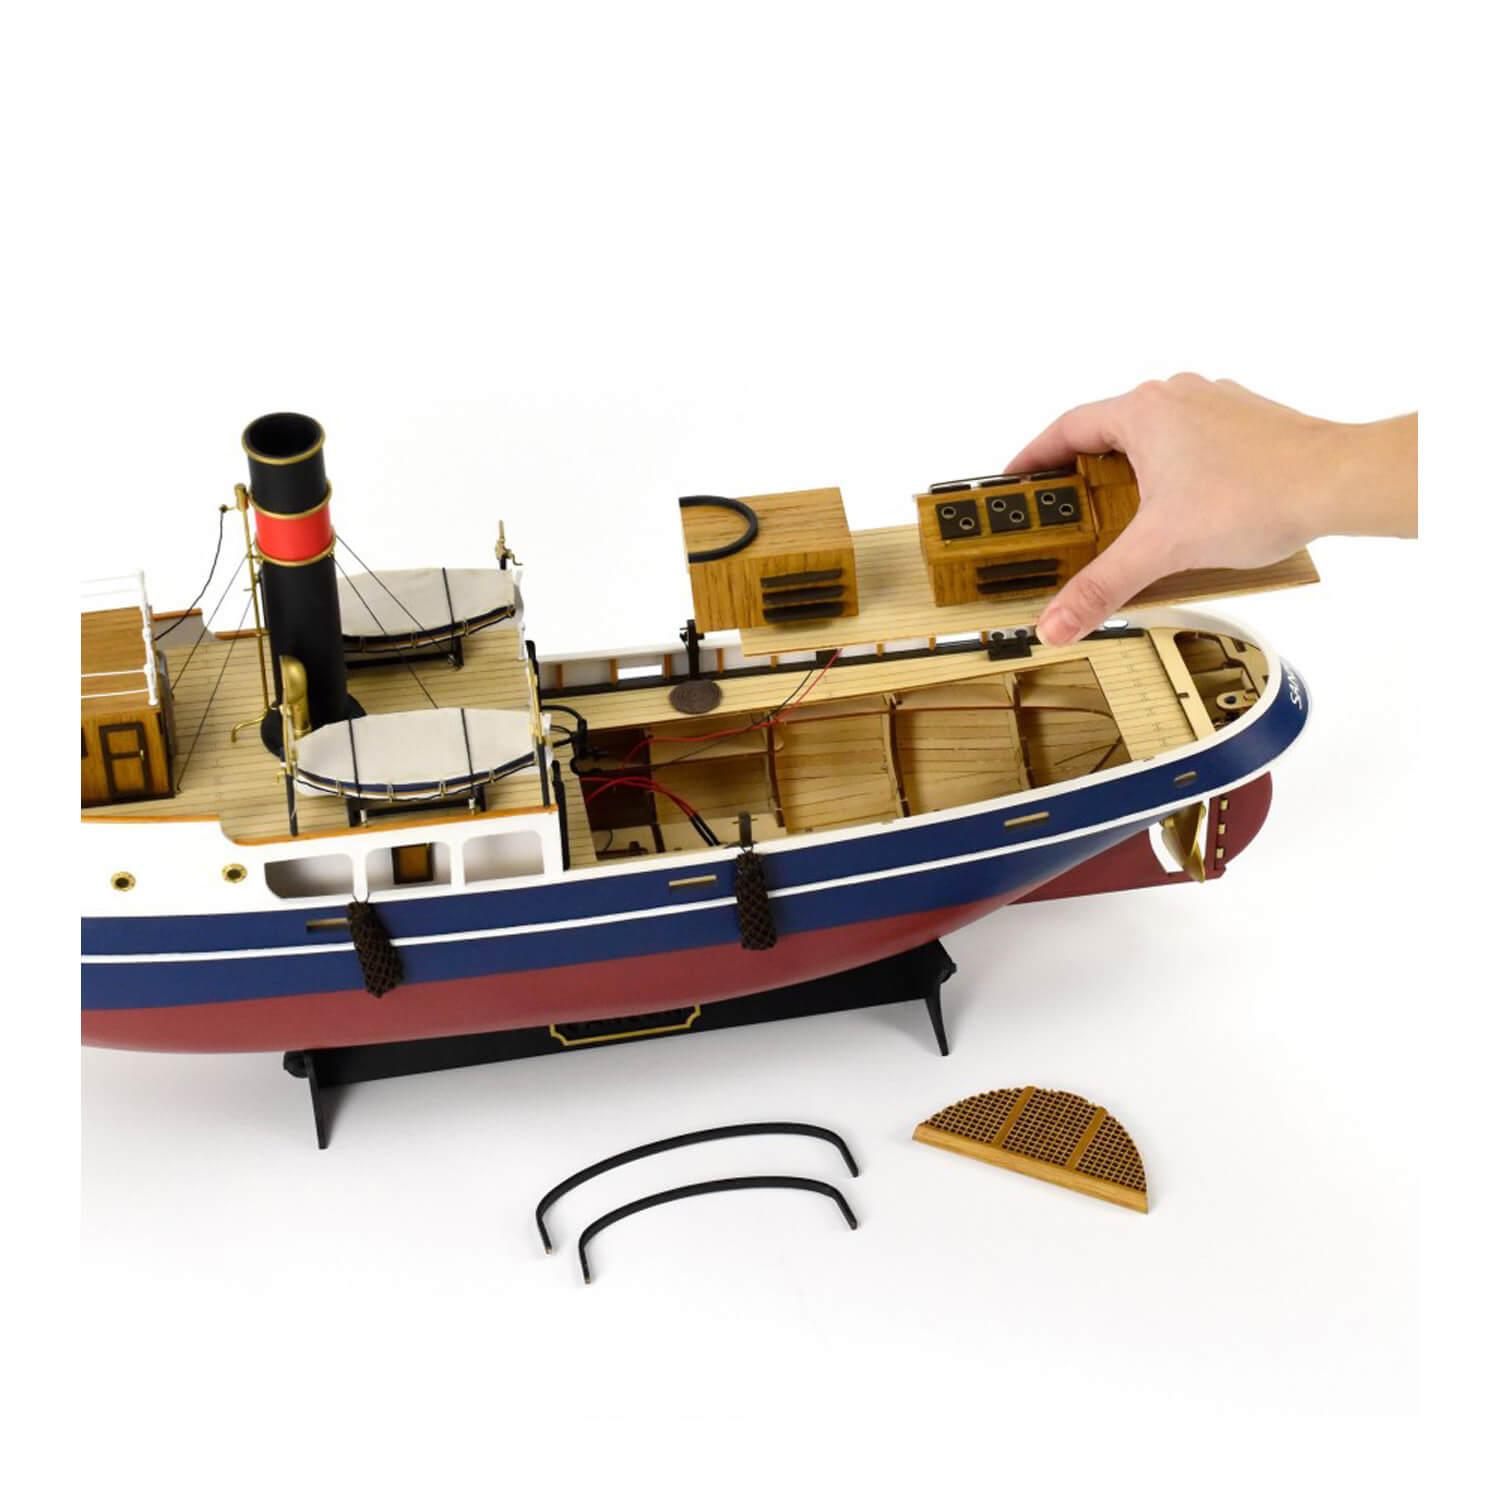 Maquette bateau en bois : Remorqueur Samson - Jeux et jouets Artesania -  Avenue des Jeux